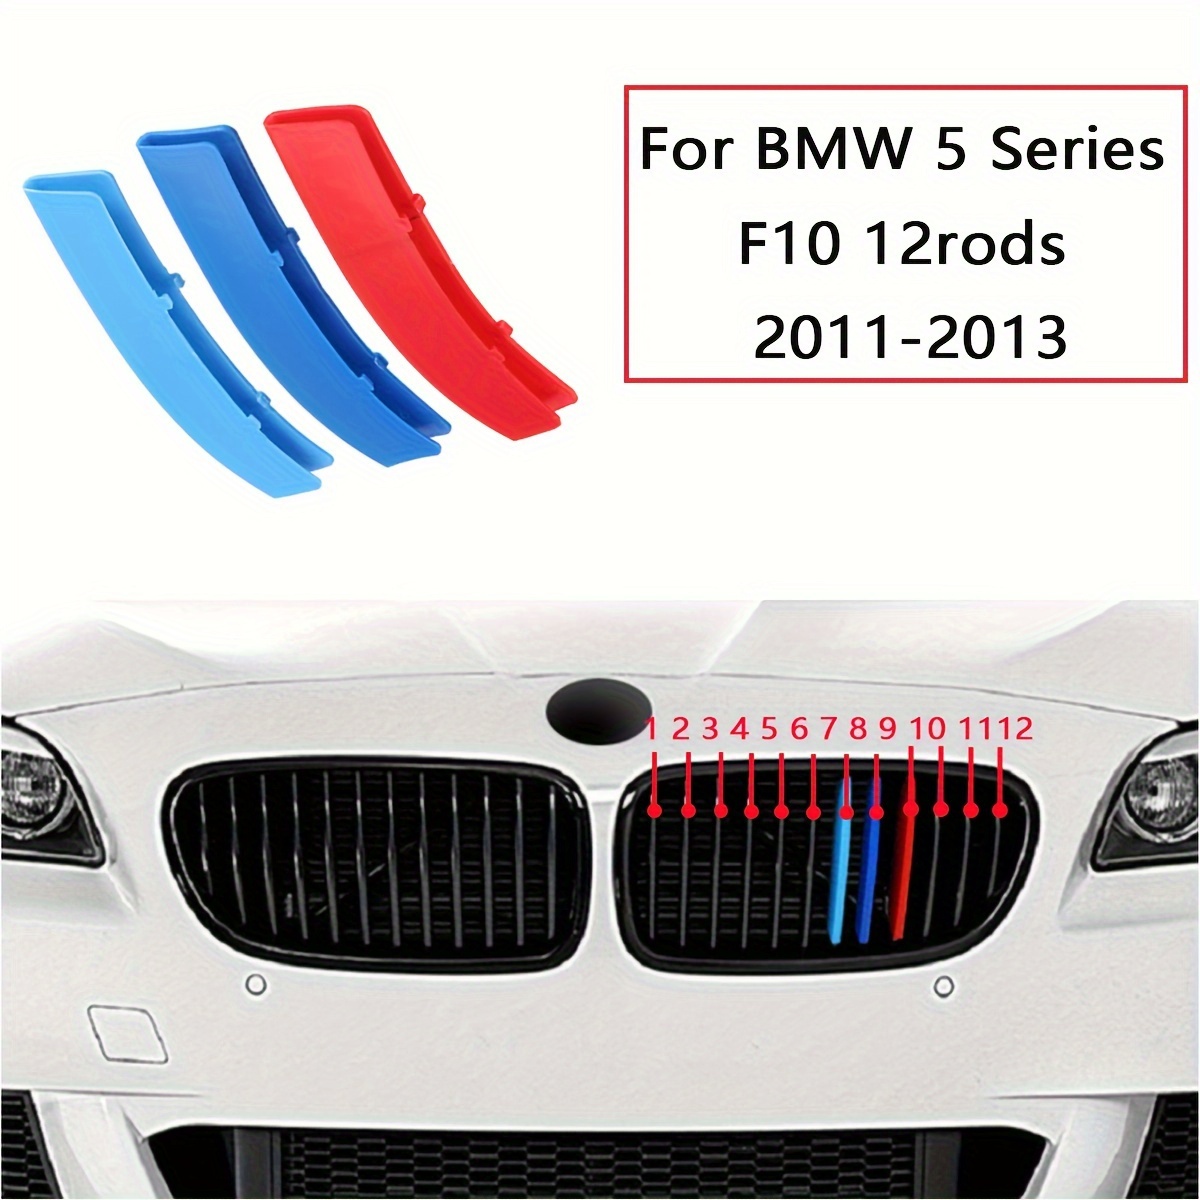 Comprar J14 # I Love My BMW E46 E36 pegatinas de coche calcomanía accesorios  de decoración de coche